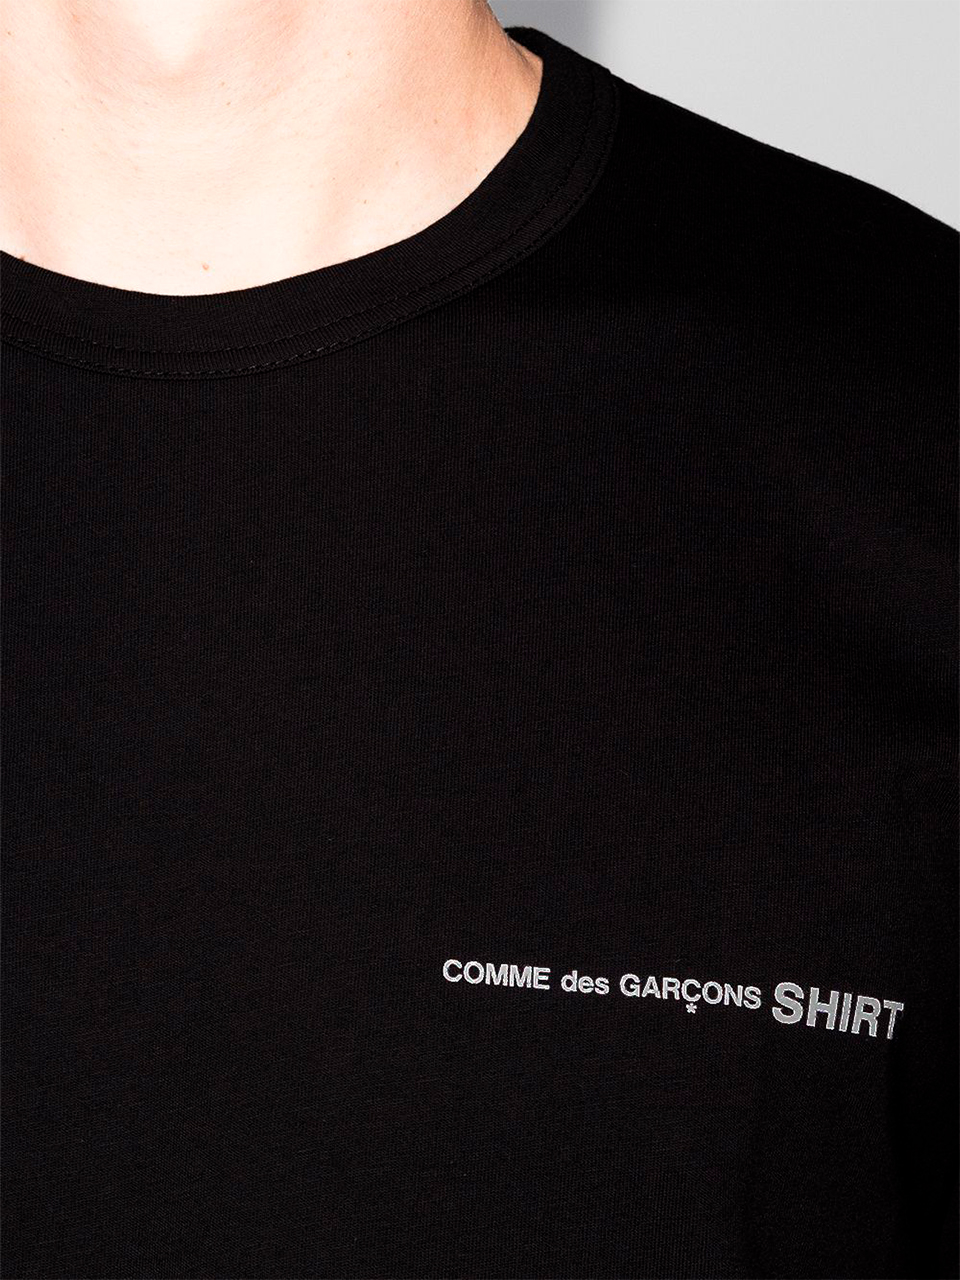 Imagem de: Camiseta Manga Longa Comme Des Garçons Shirt Preto